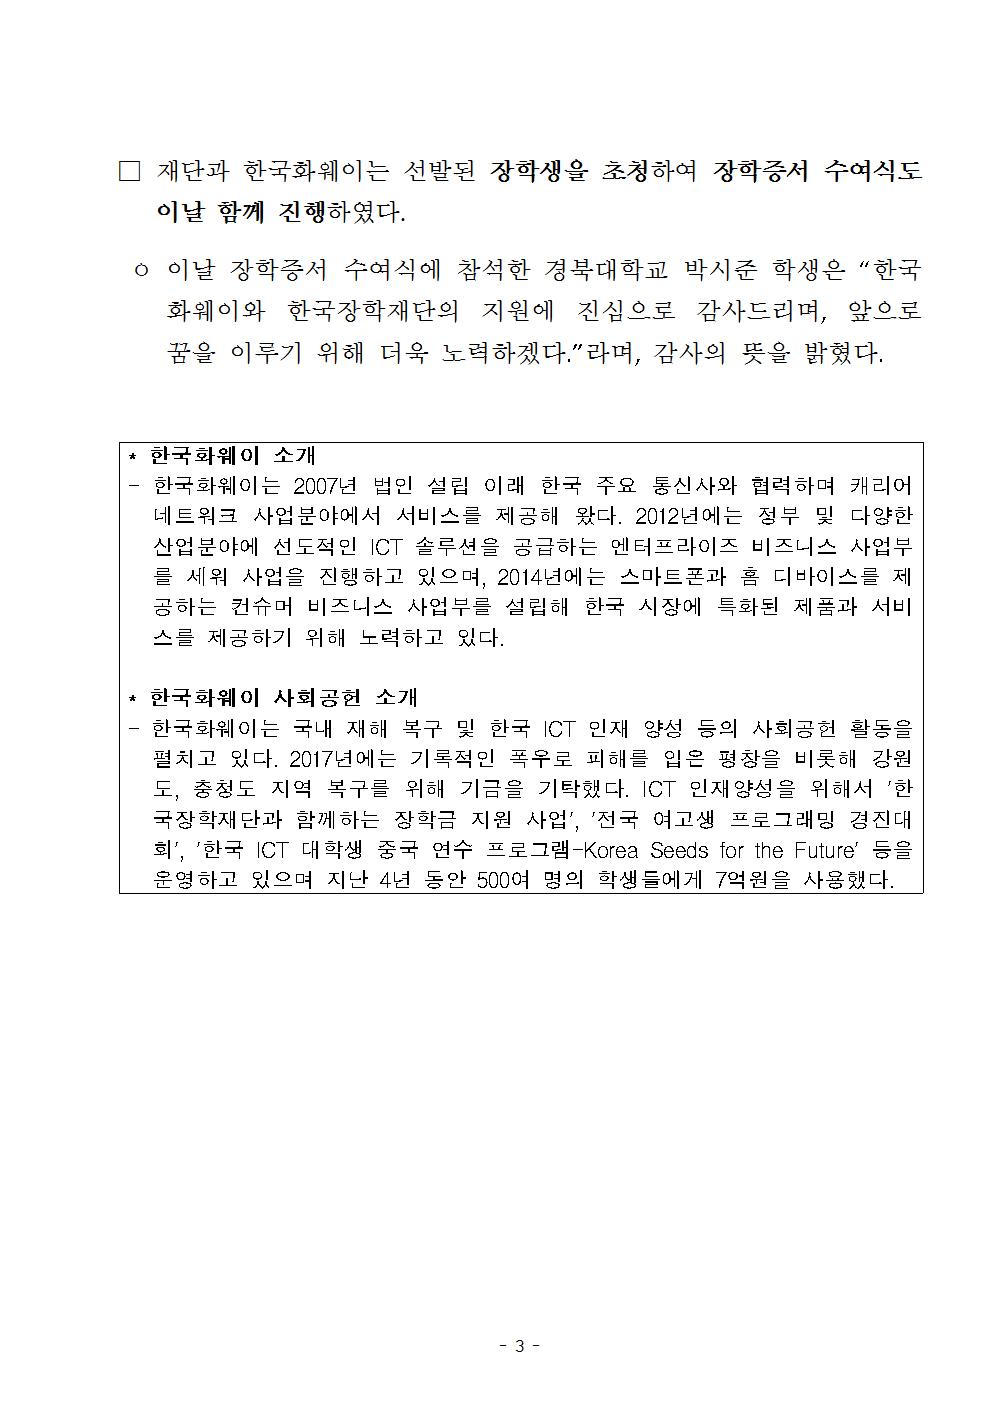 11-30(금)[보도자료] (한국장학재단-한국화웨이) 푸른등대 기부장학금 기탁식 개최003.jpg